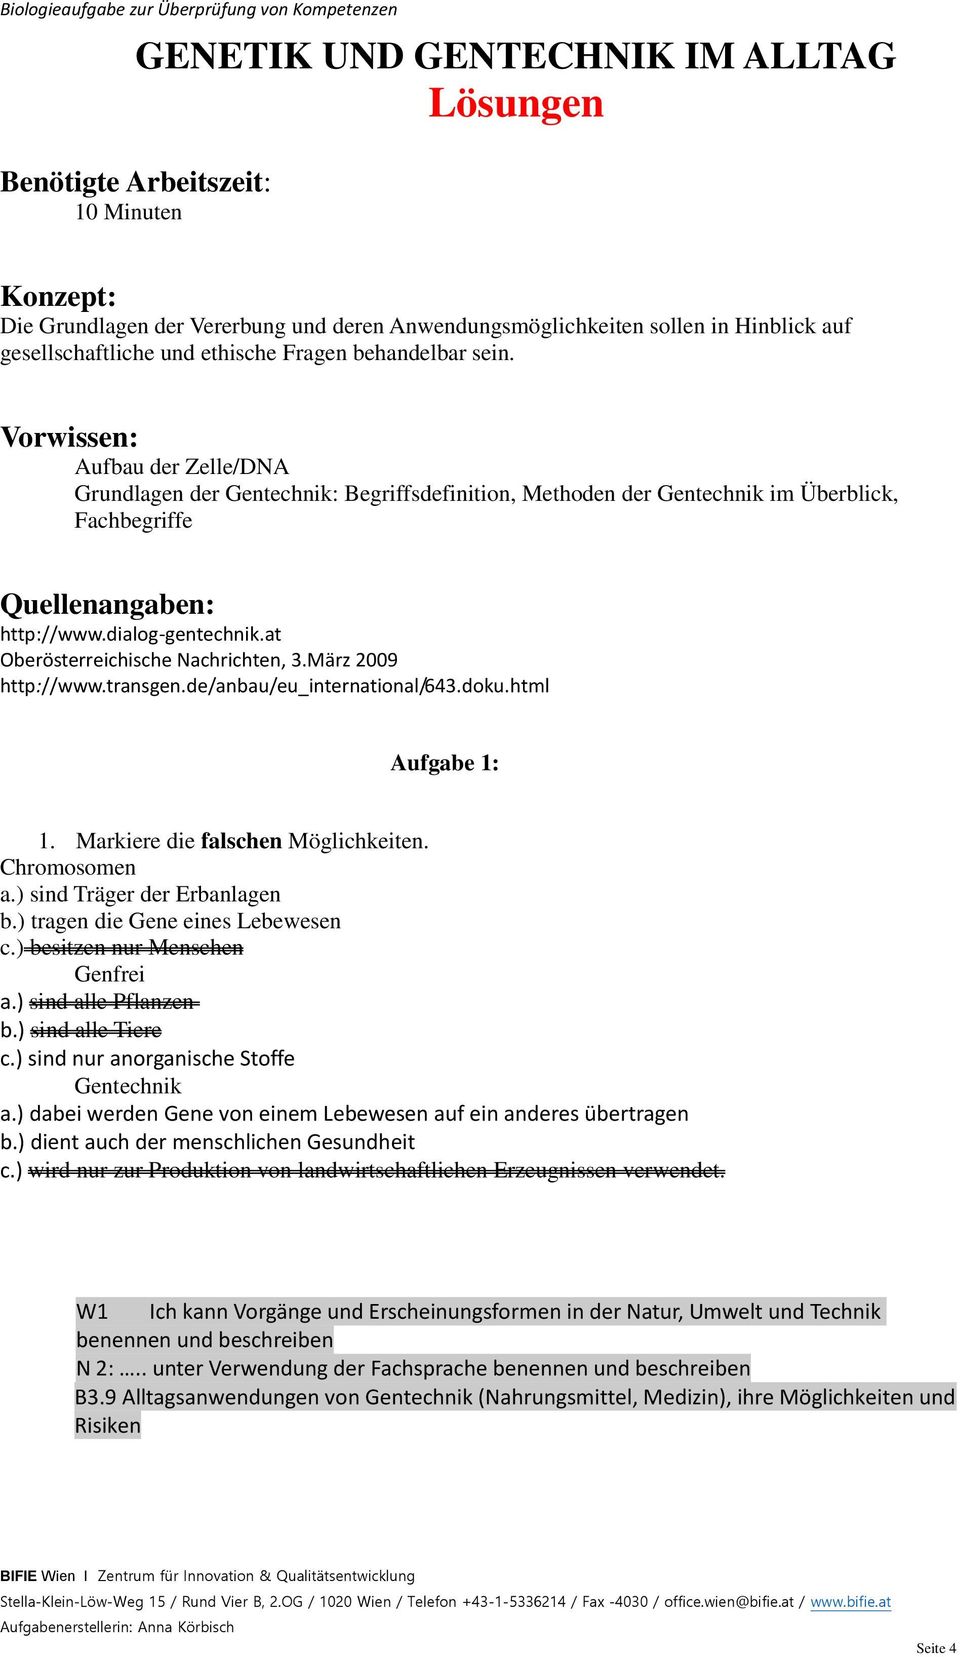 dialog-gentechnik.at Oberösterreichische Nachrichten, 3.März 2009 http://www.transgen.de/anbau/eu_international/643.doku.html Aufgabe 1: 1. Markiere die falschen Möglichkeiten. Chromosomen a.